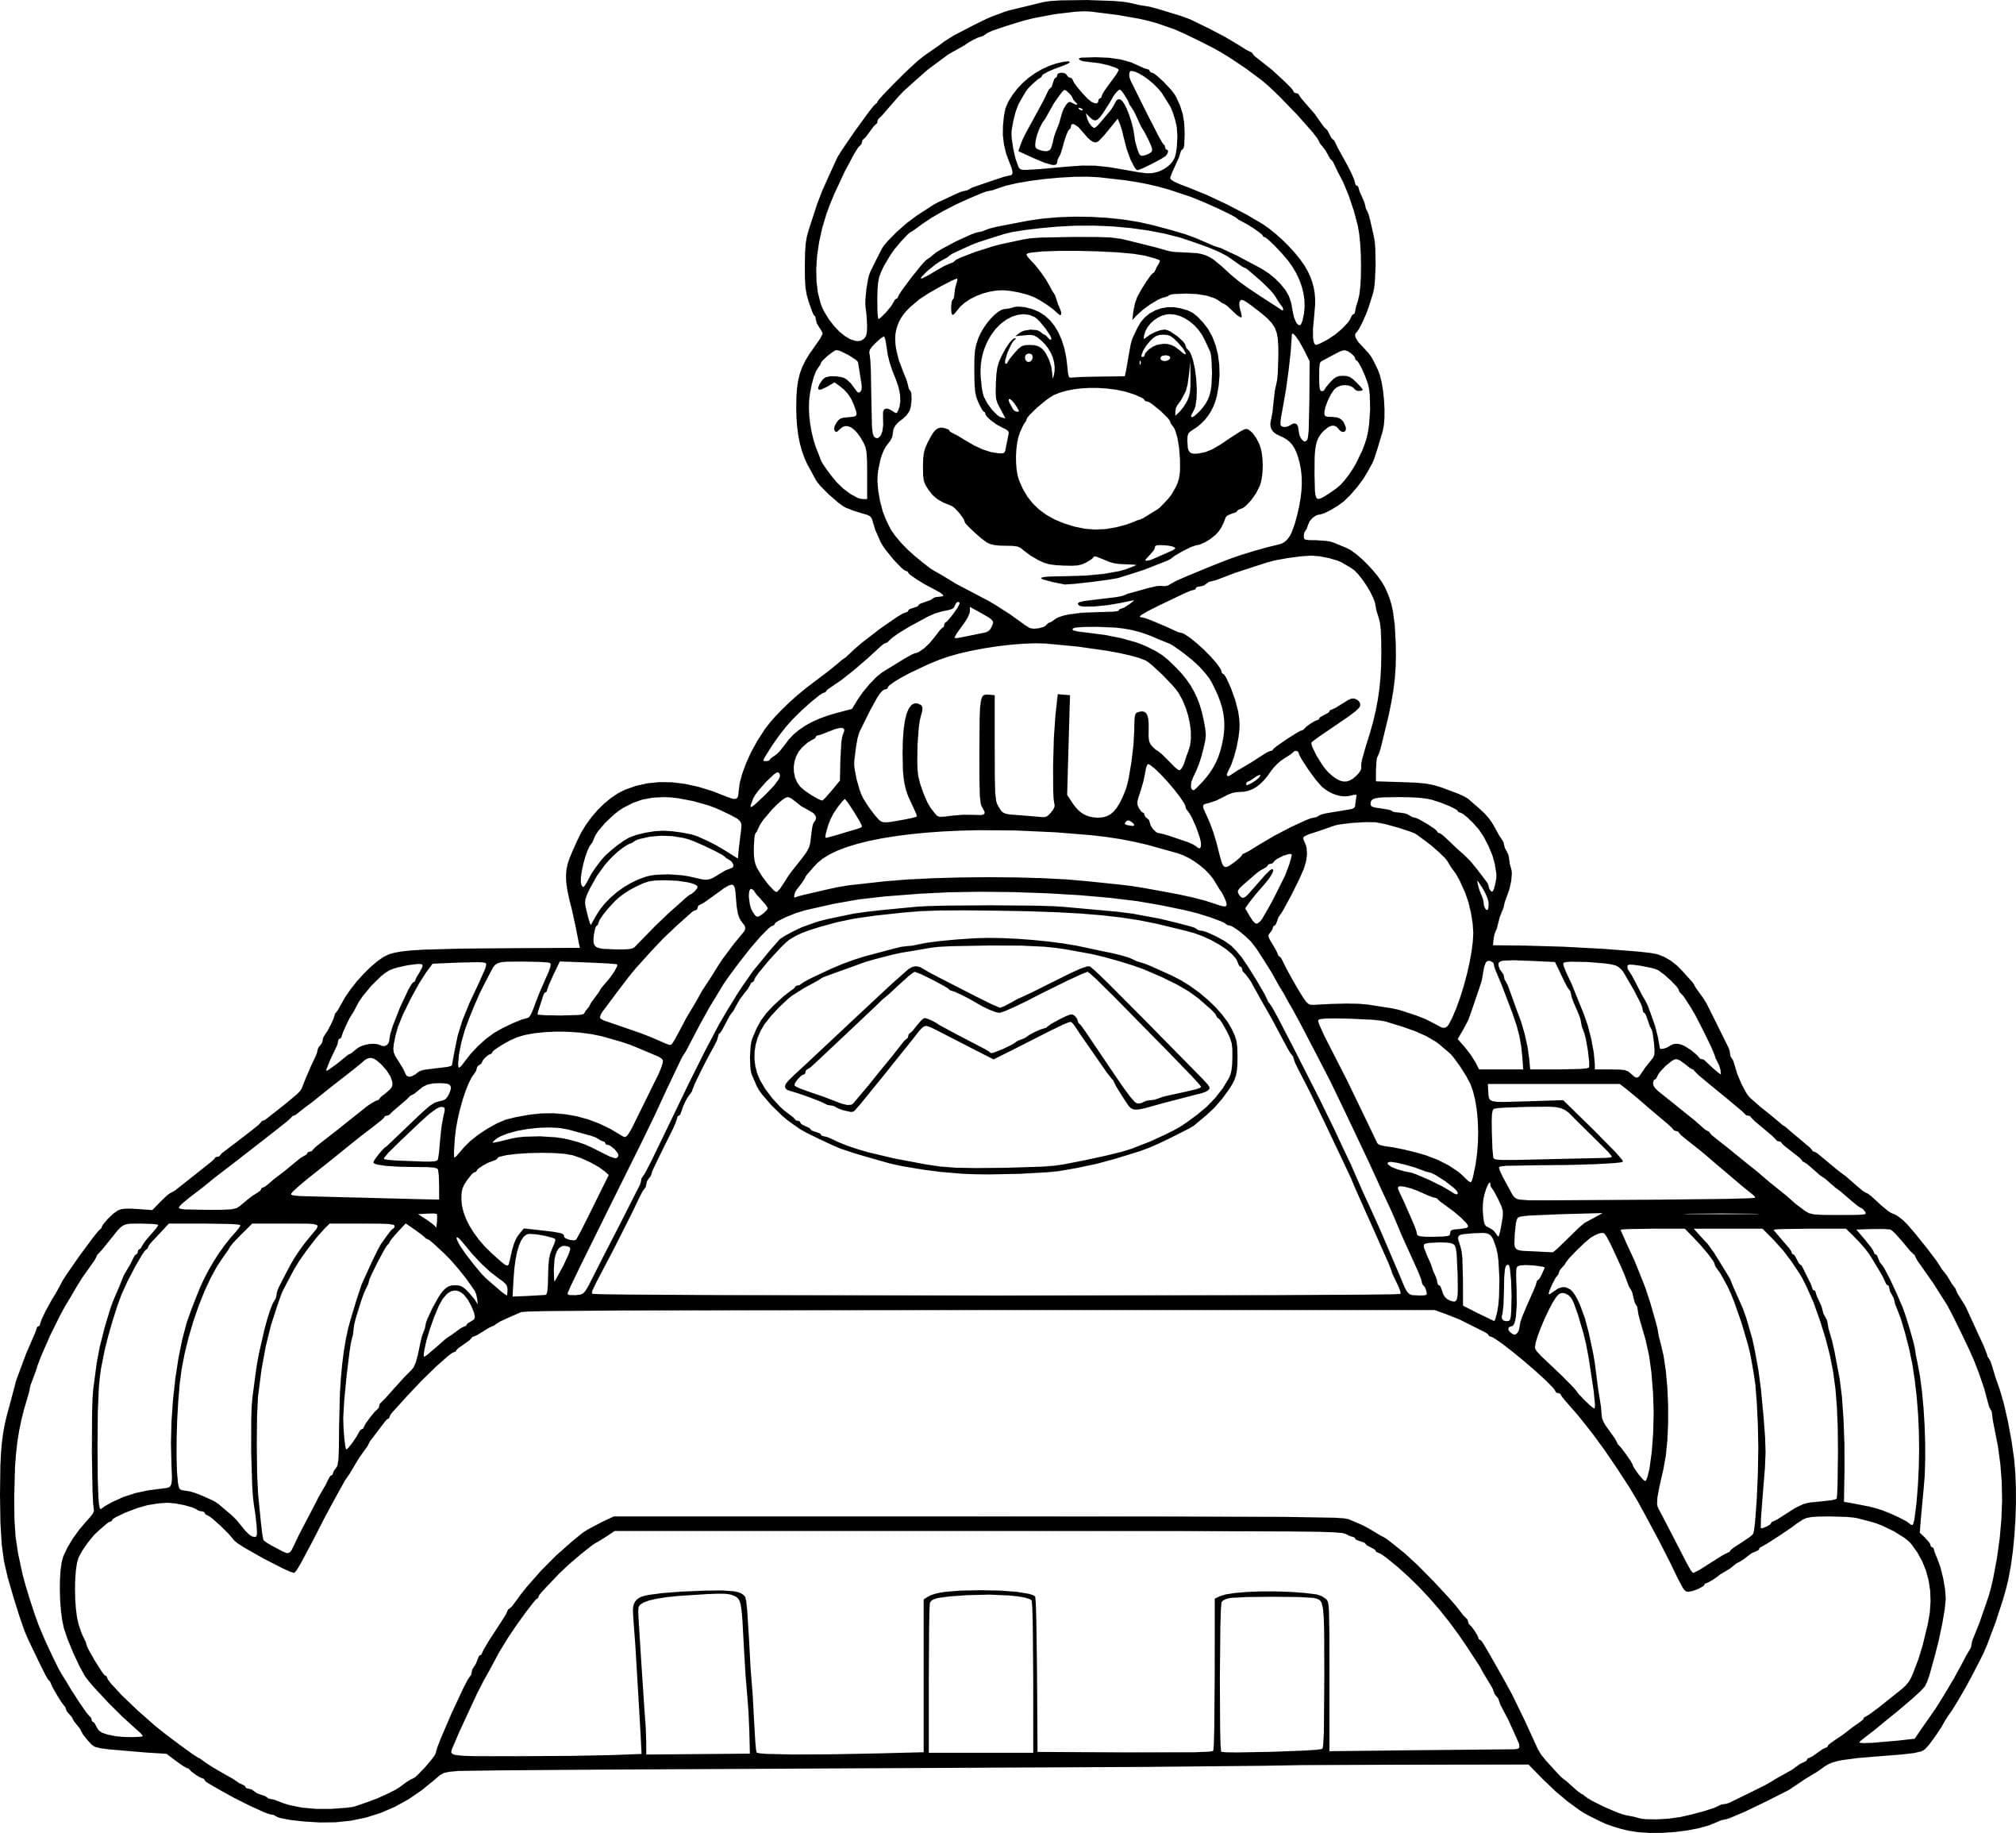 Dibujo 07 de Super Mario para imprimir y colorear